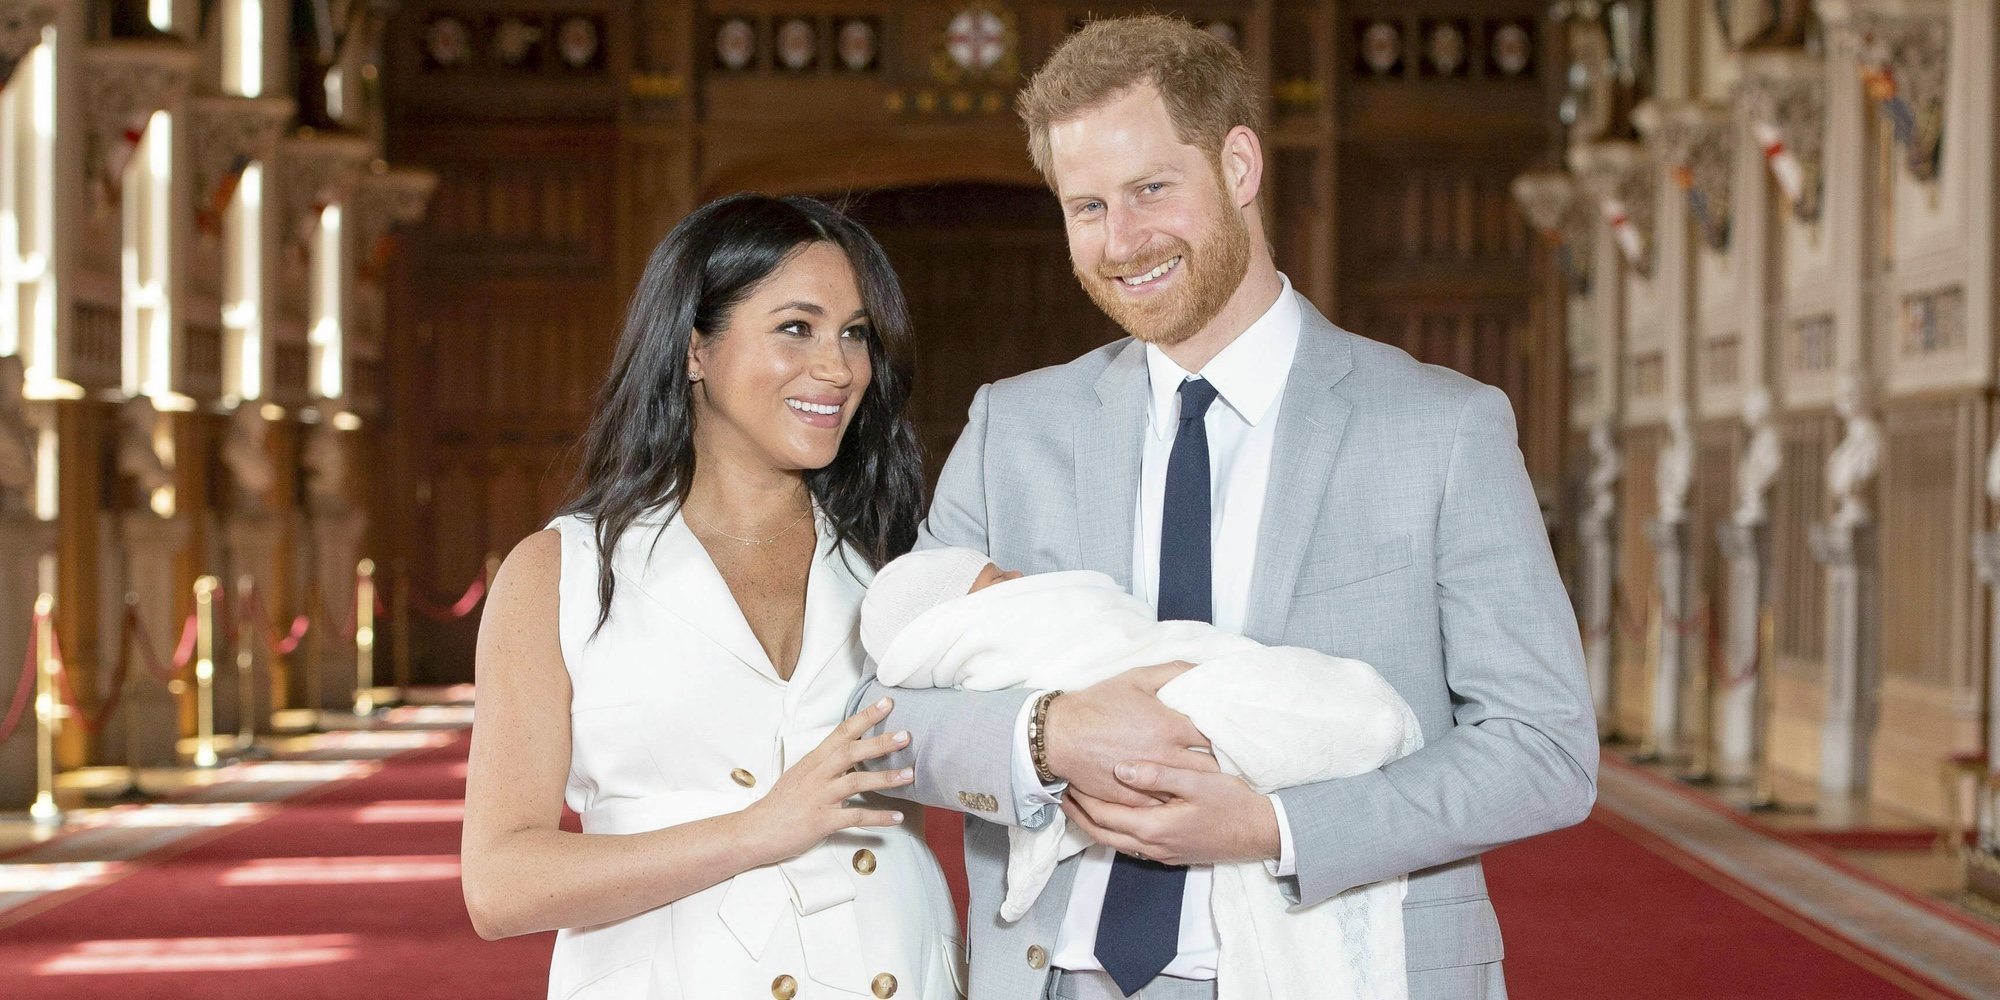 El plan low cost del Príncipe Harry y Meghan Markle con su hijo Archie Harrison